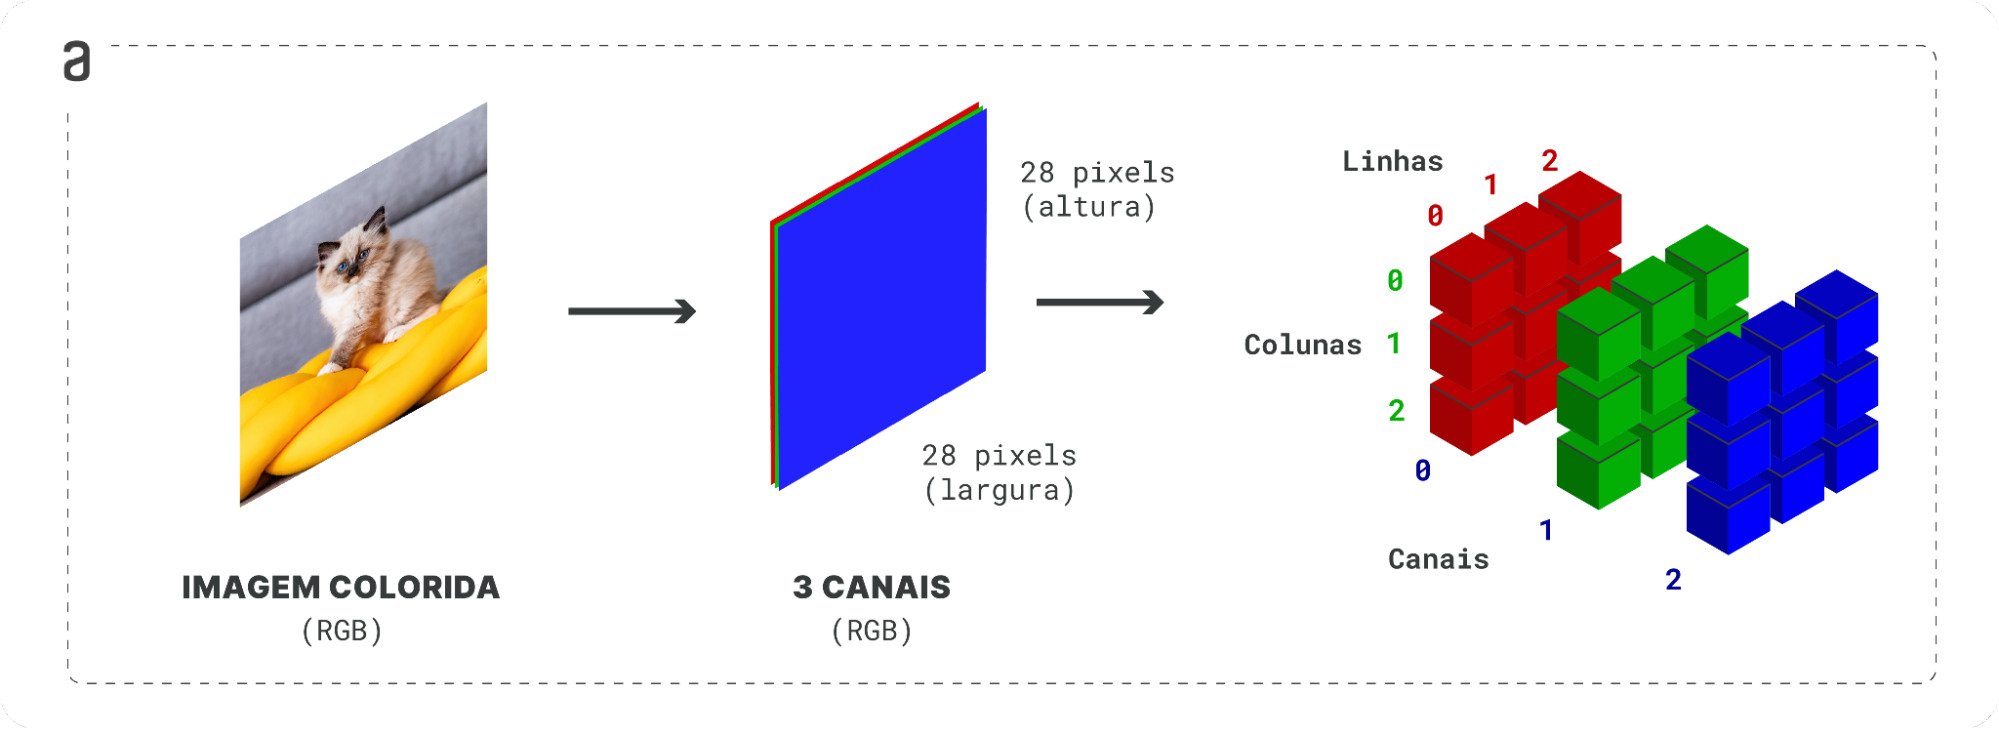 Três imagens em sequência com um fundo branco. A primeira imagem é a foto de um gato, representando uma imagem colorida RGB genérica. A segunda imagem representa a decomposição da primeira em três canais RGB. A terceira imagem detalha a decomposição RGB em três tabelas de dados, uma para cada canal.